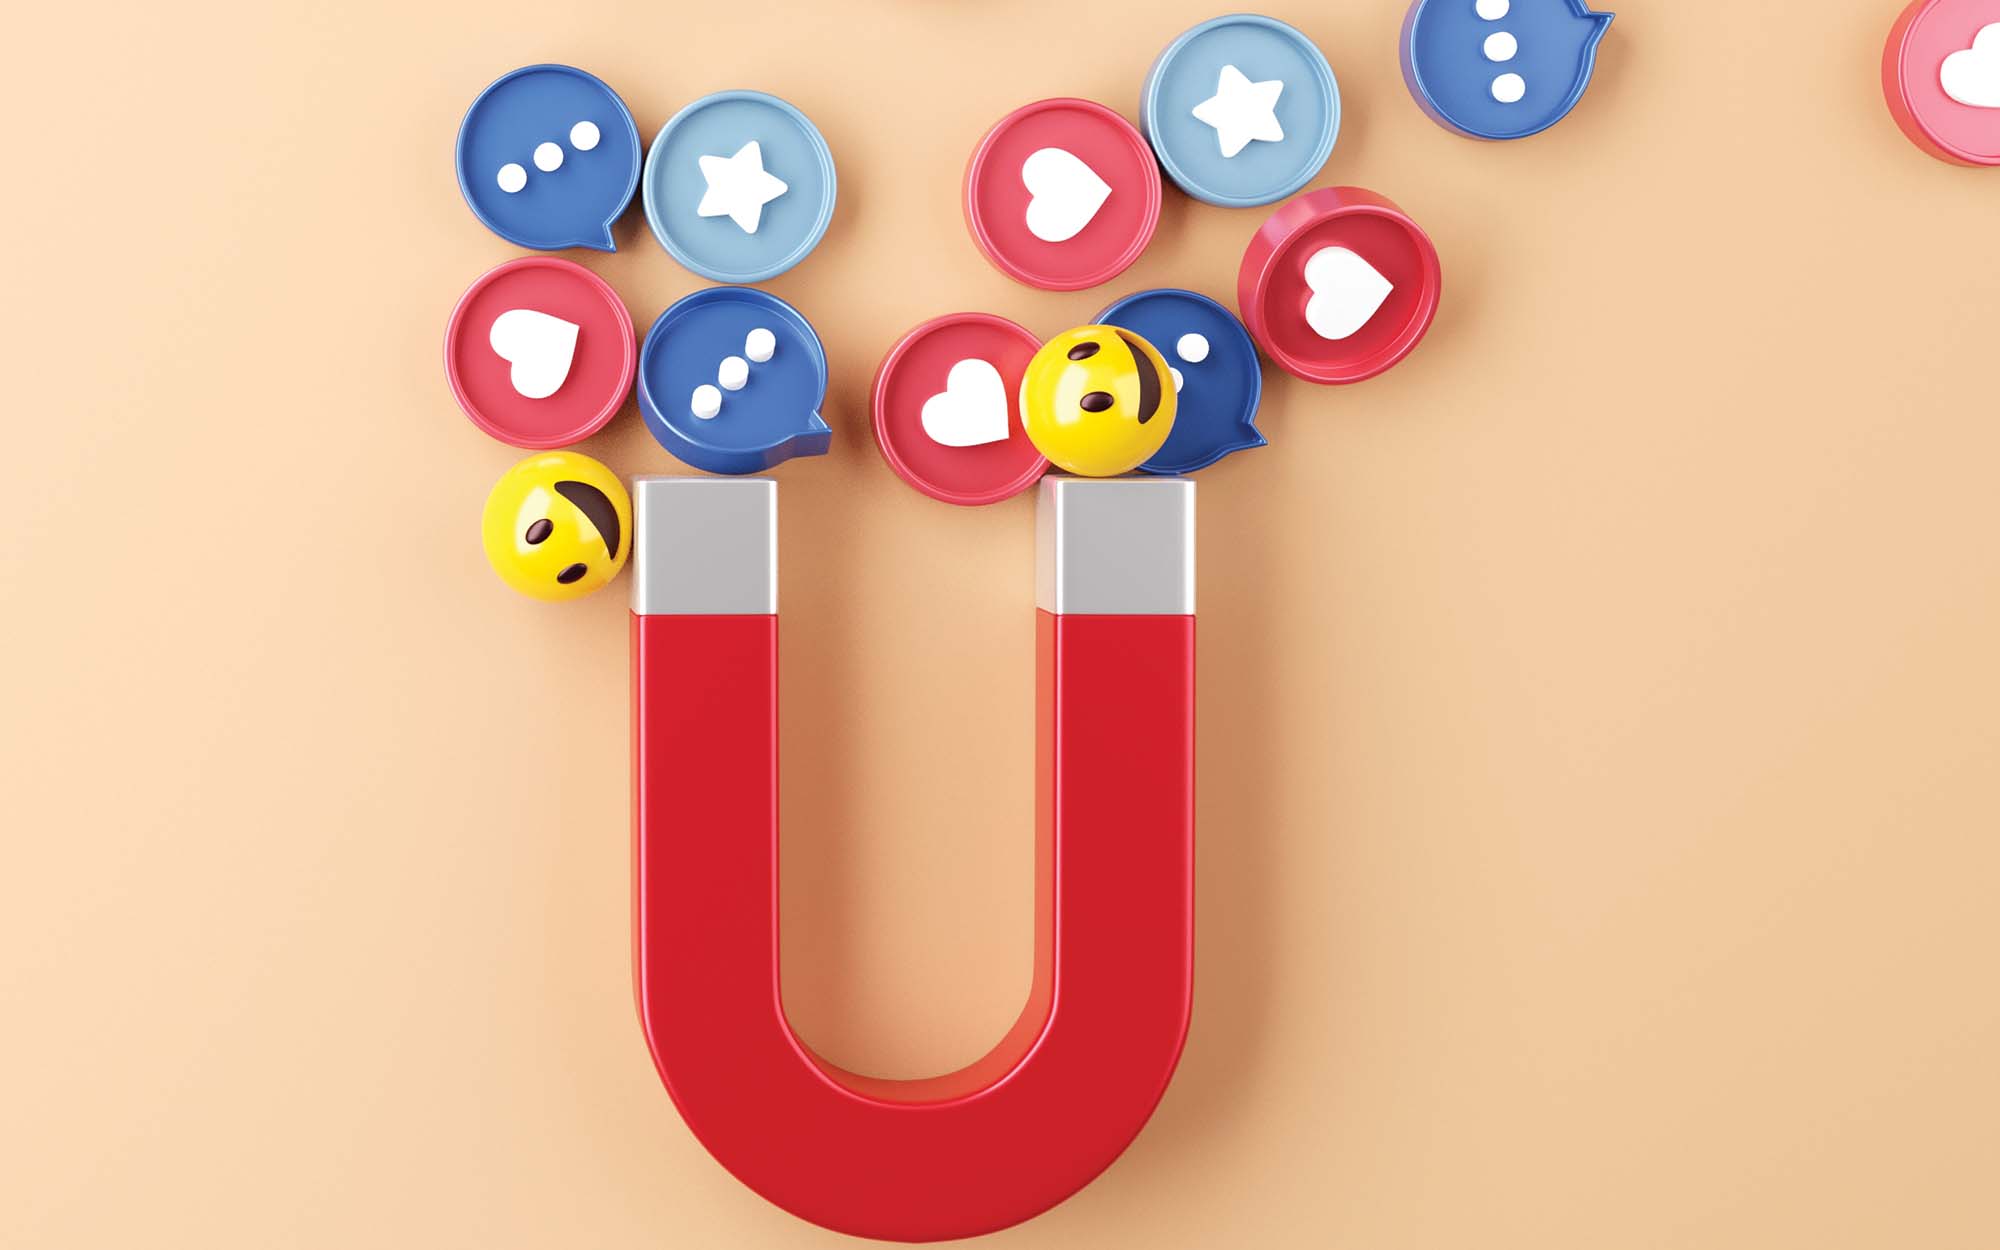 social media icons magnet illustration